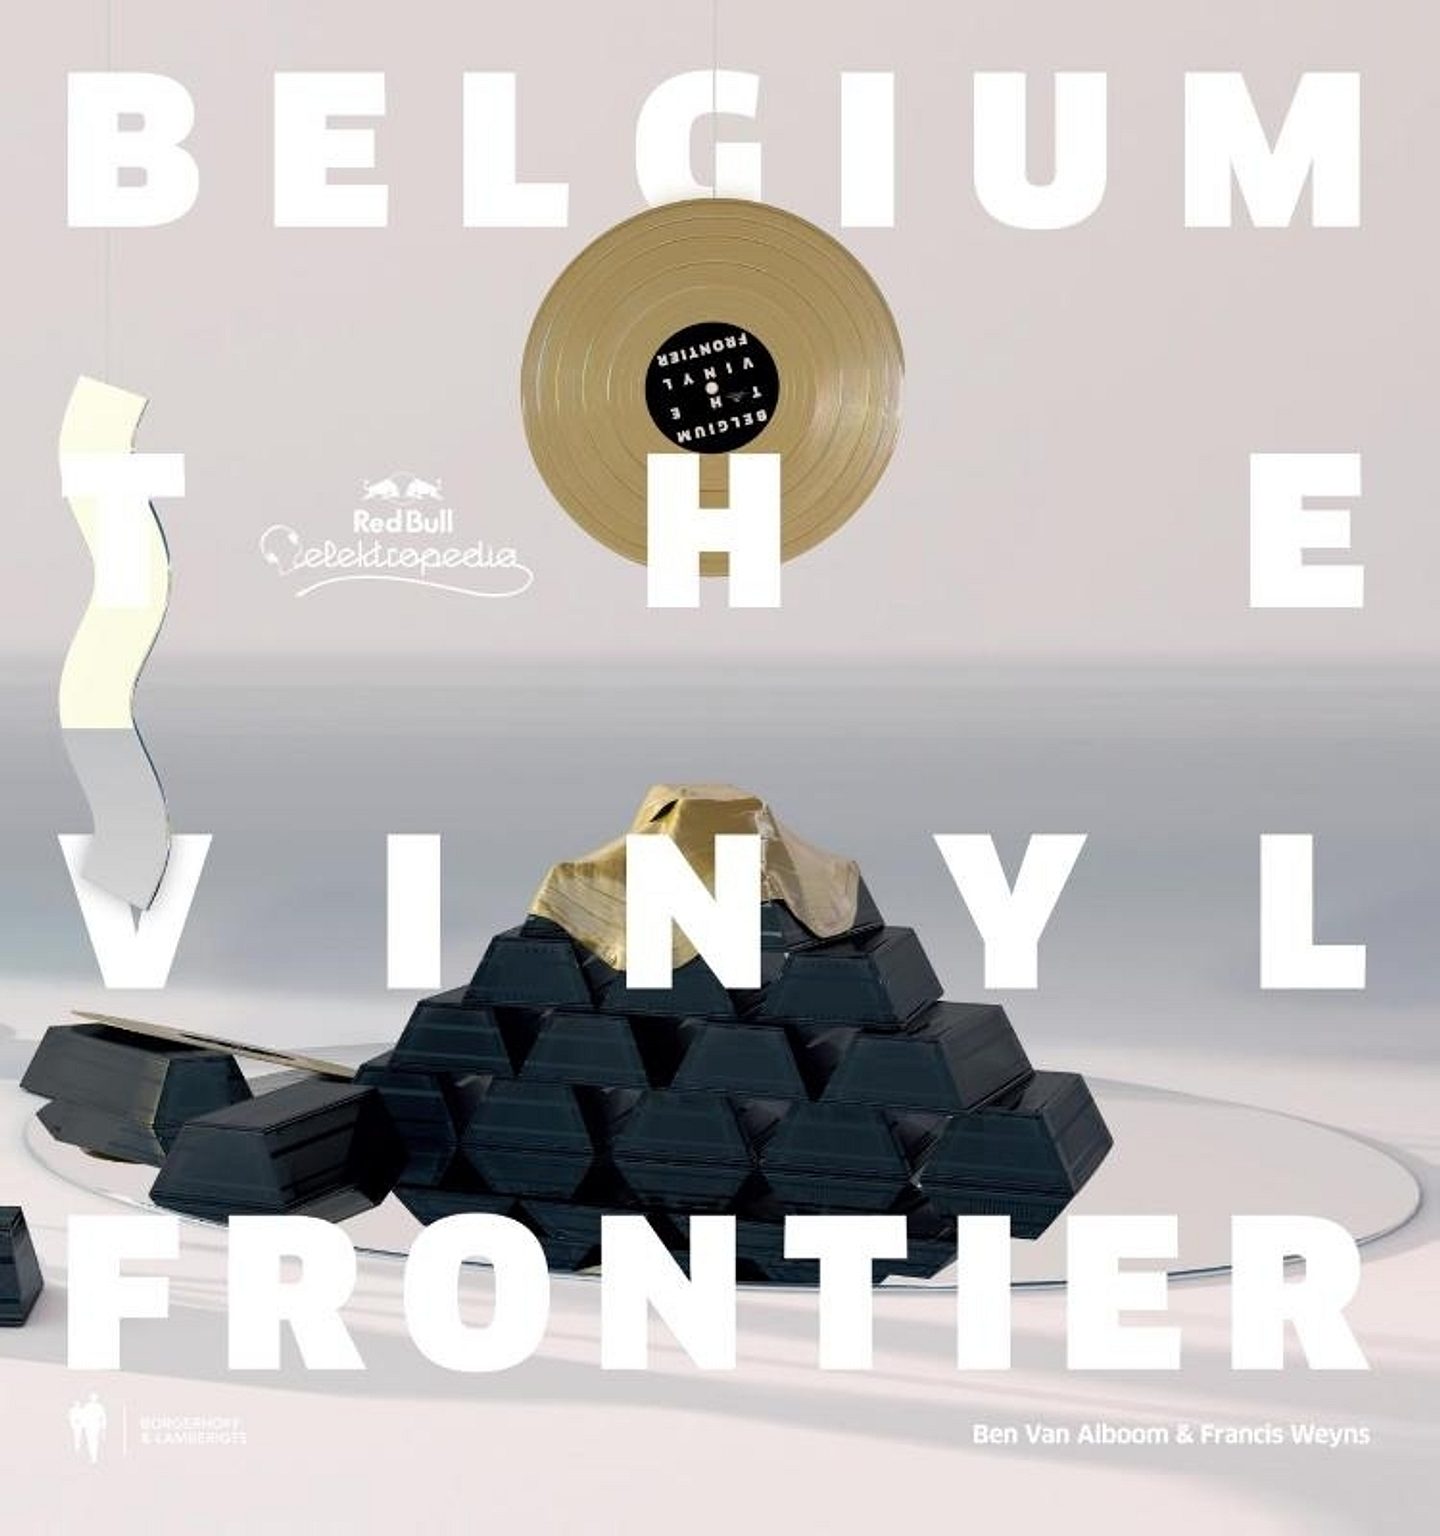 Belgium: the vinyl frontier